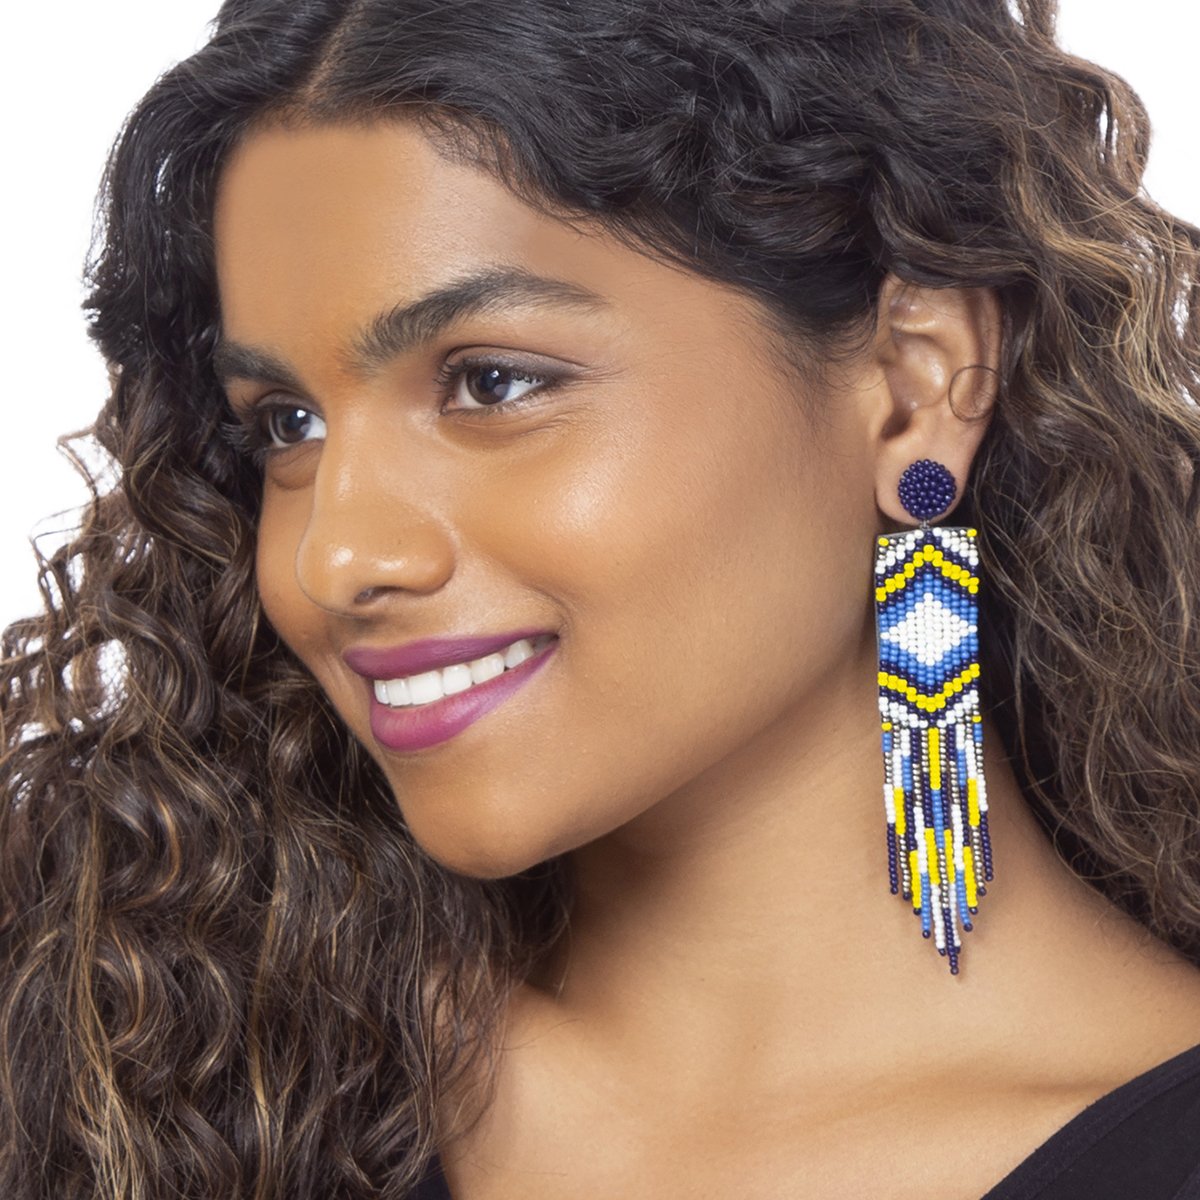 Model wearing handmade blue beaded earrings